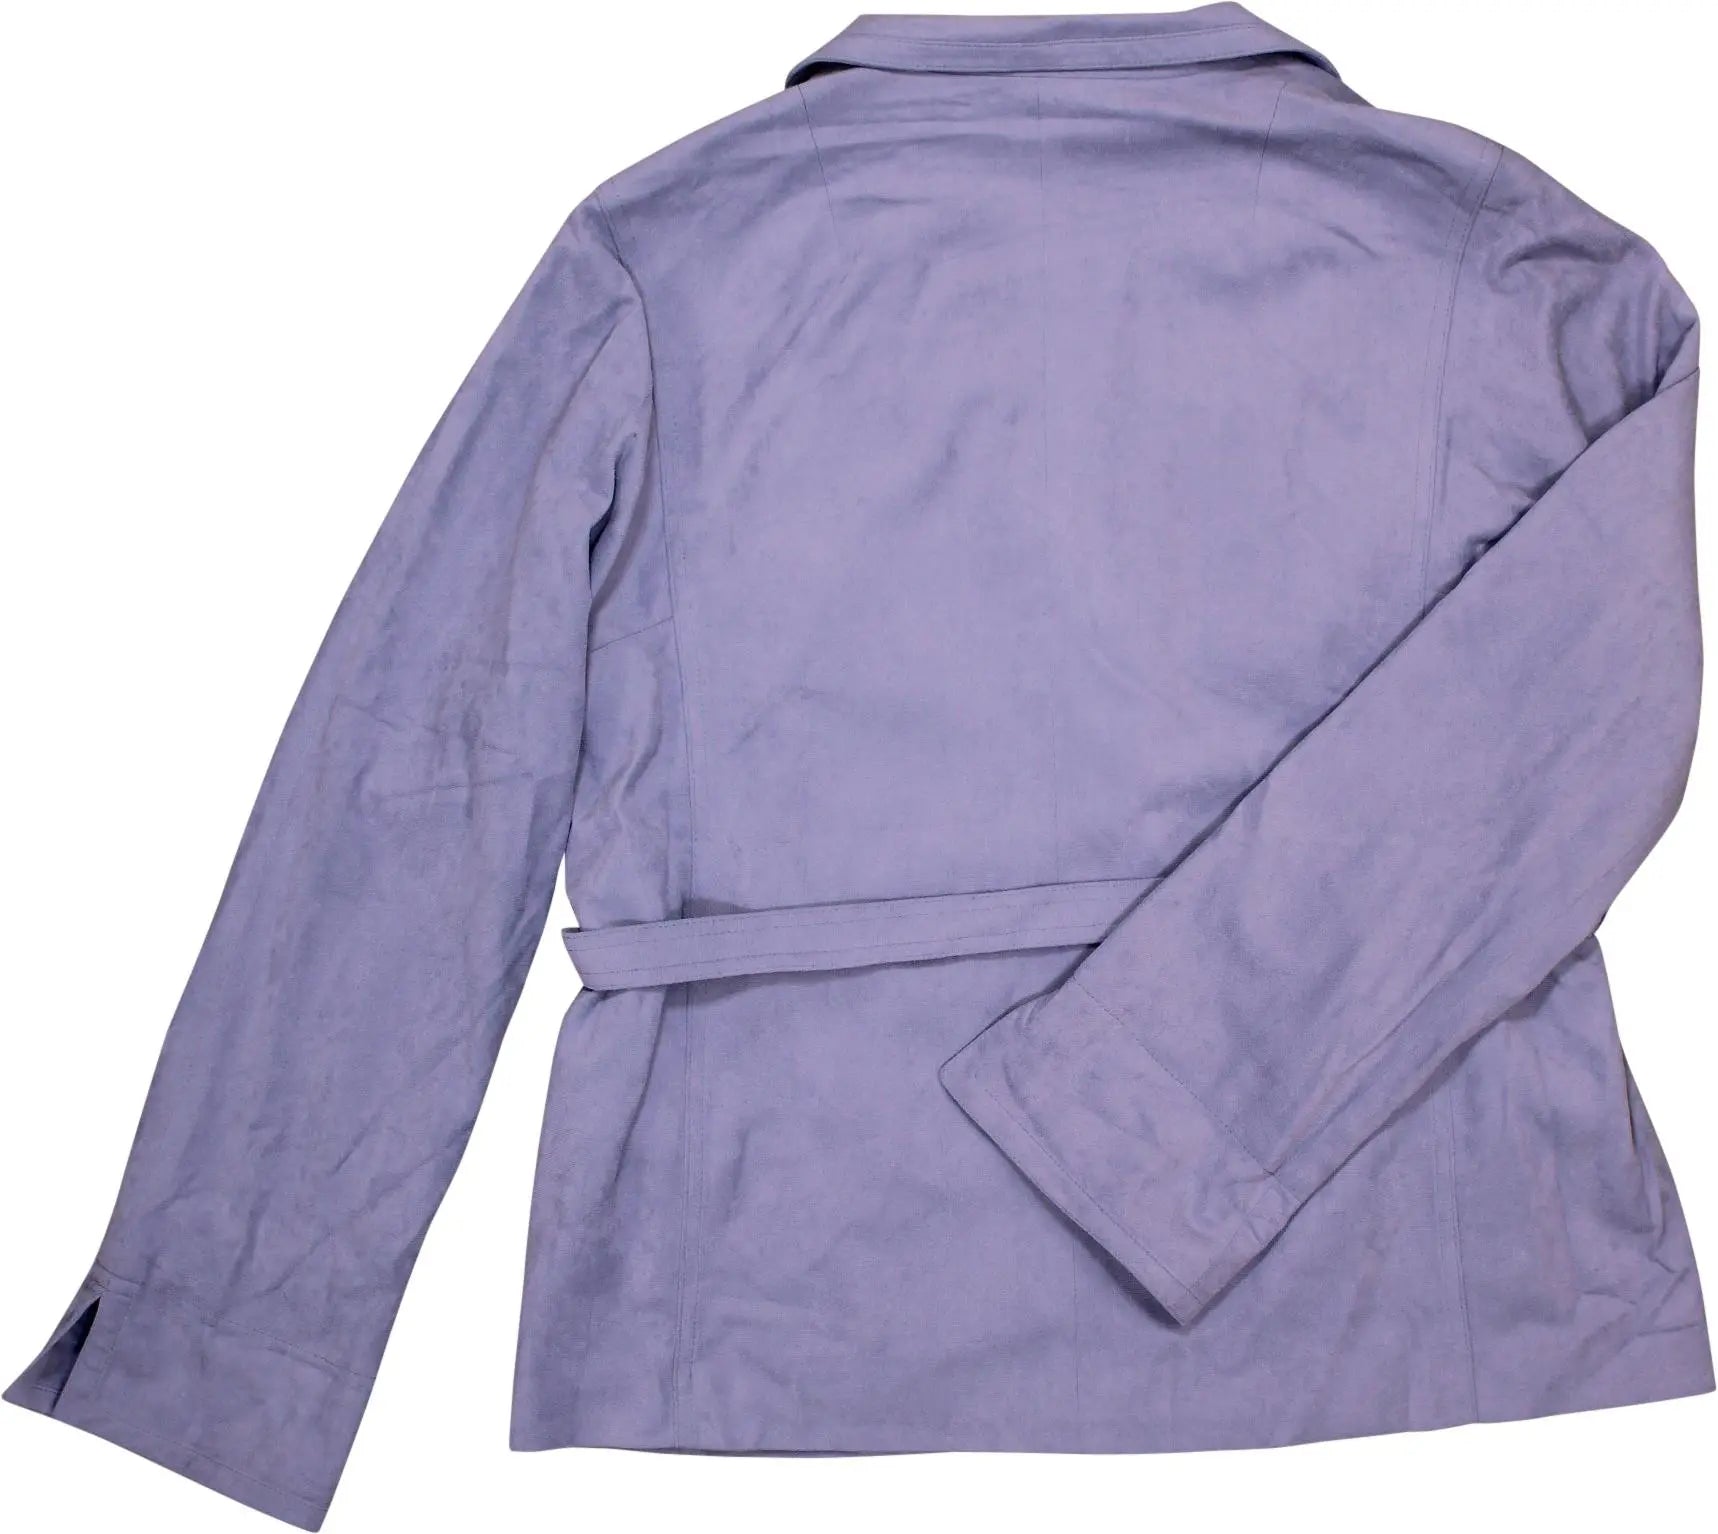 Jedezet - Jedezet Velvet Suit- ThriftTale.com - Vintage and second handclothing